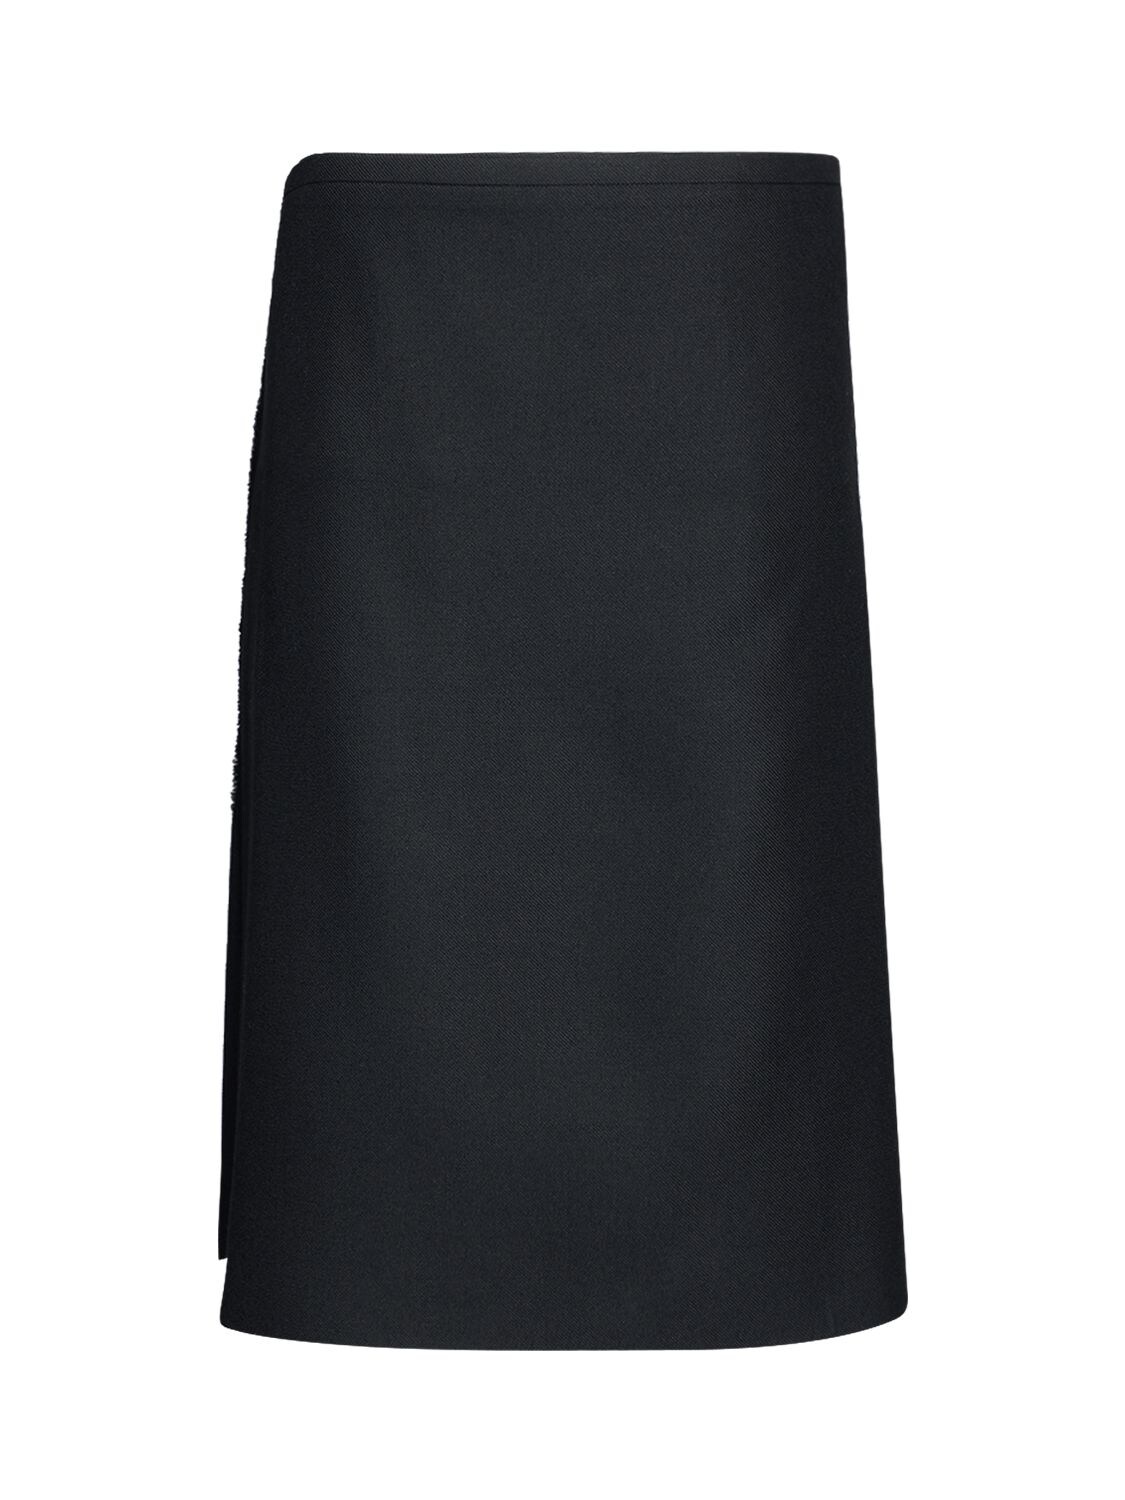 BALENCIAGA 苏格兰风格围裹式羊毛半身裙,72I5CI025-MTAWMA2